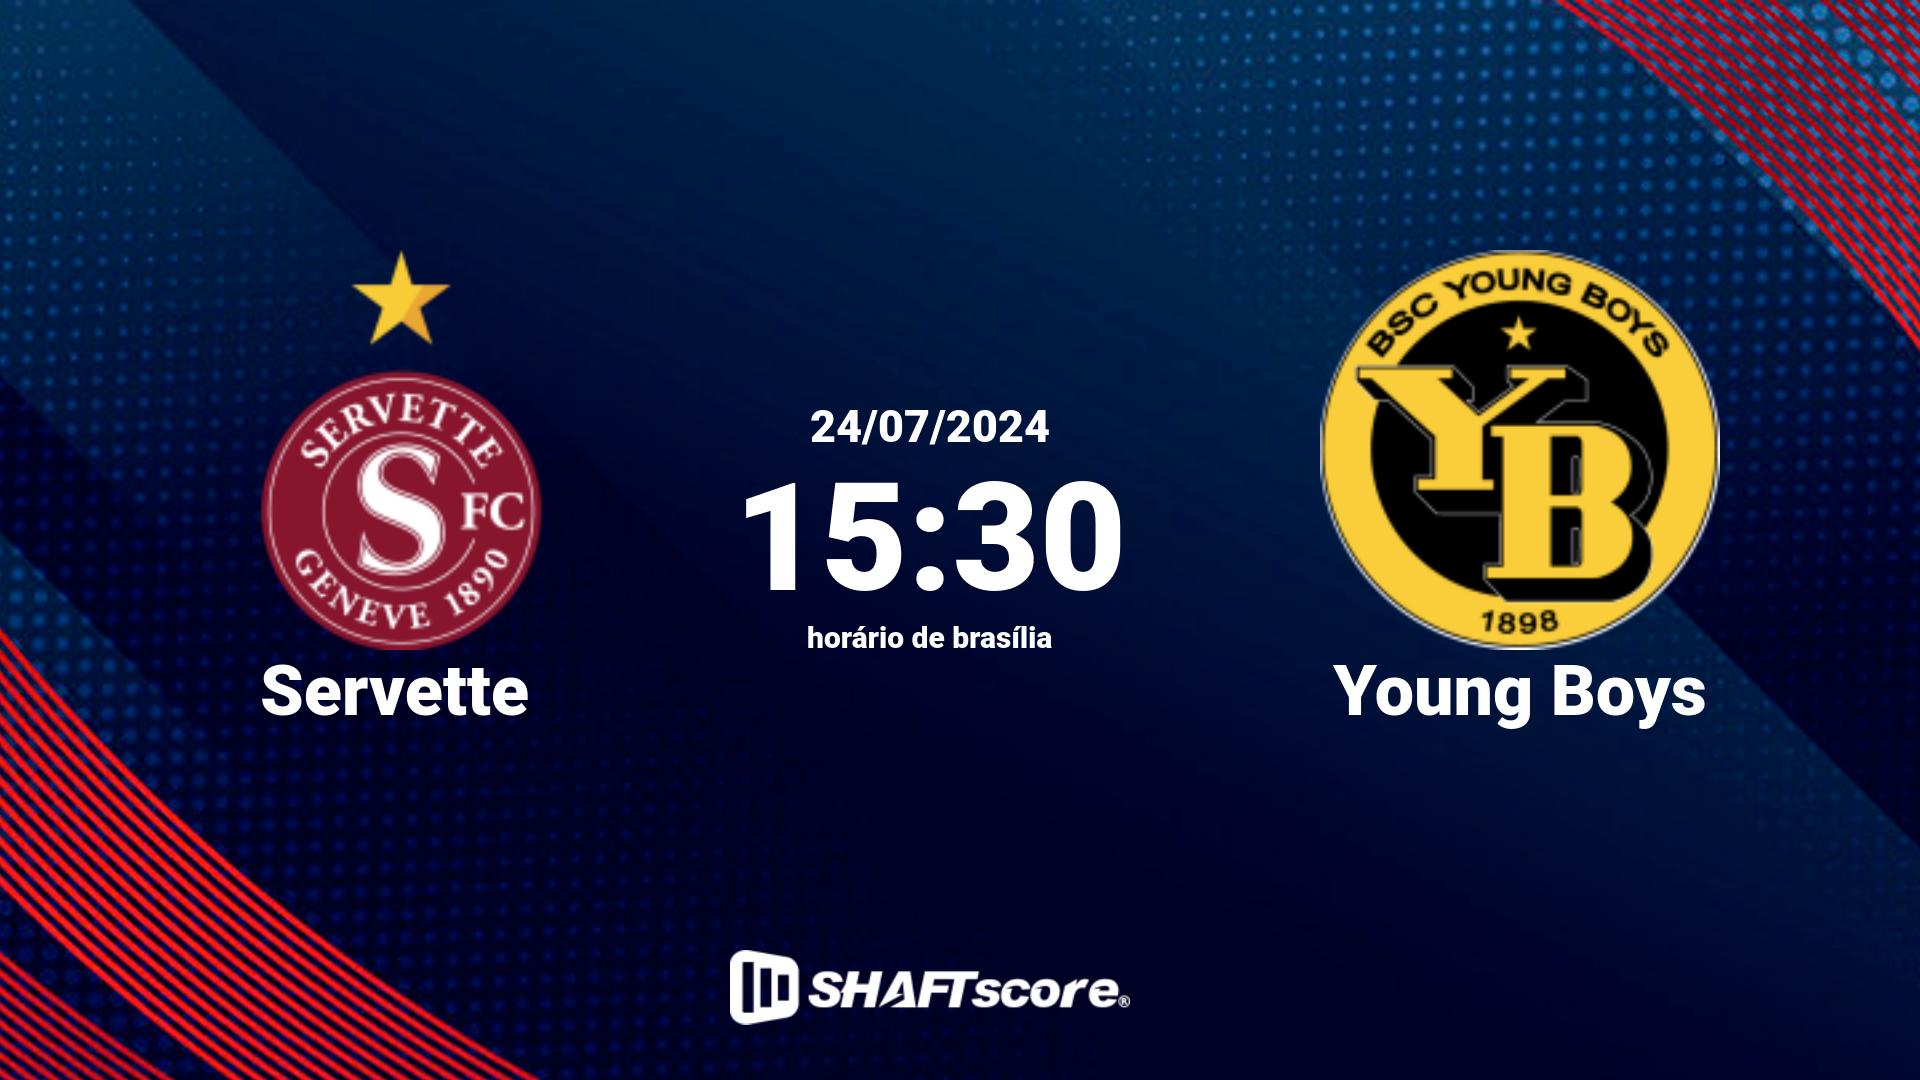 Estatísticas do jogo Servette vs Young Boys 24.07 15:30